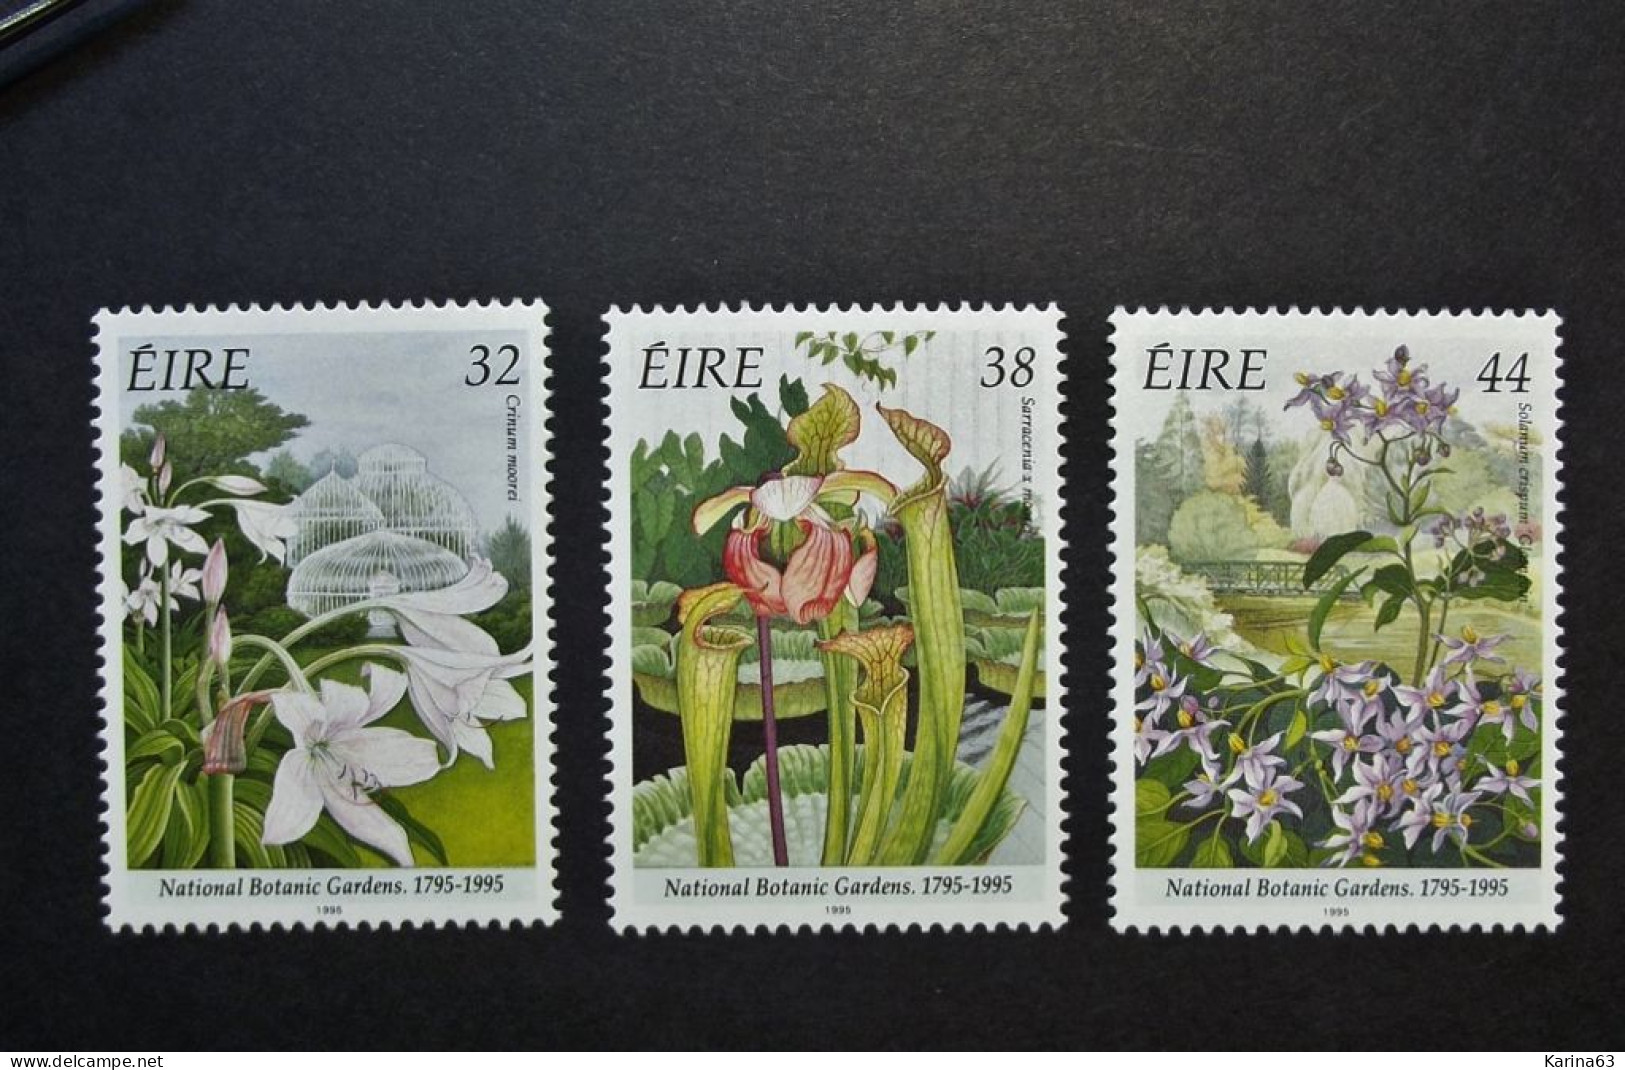 Ireland - Irelande - Eire - 1995 - Y&T N° 920 / 922 ( 3 Val.) Nature - Botanic Garden - Flower - Fleurs - MNH - Postfris - Neufs